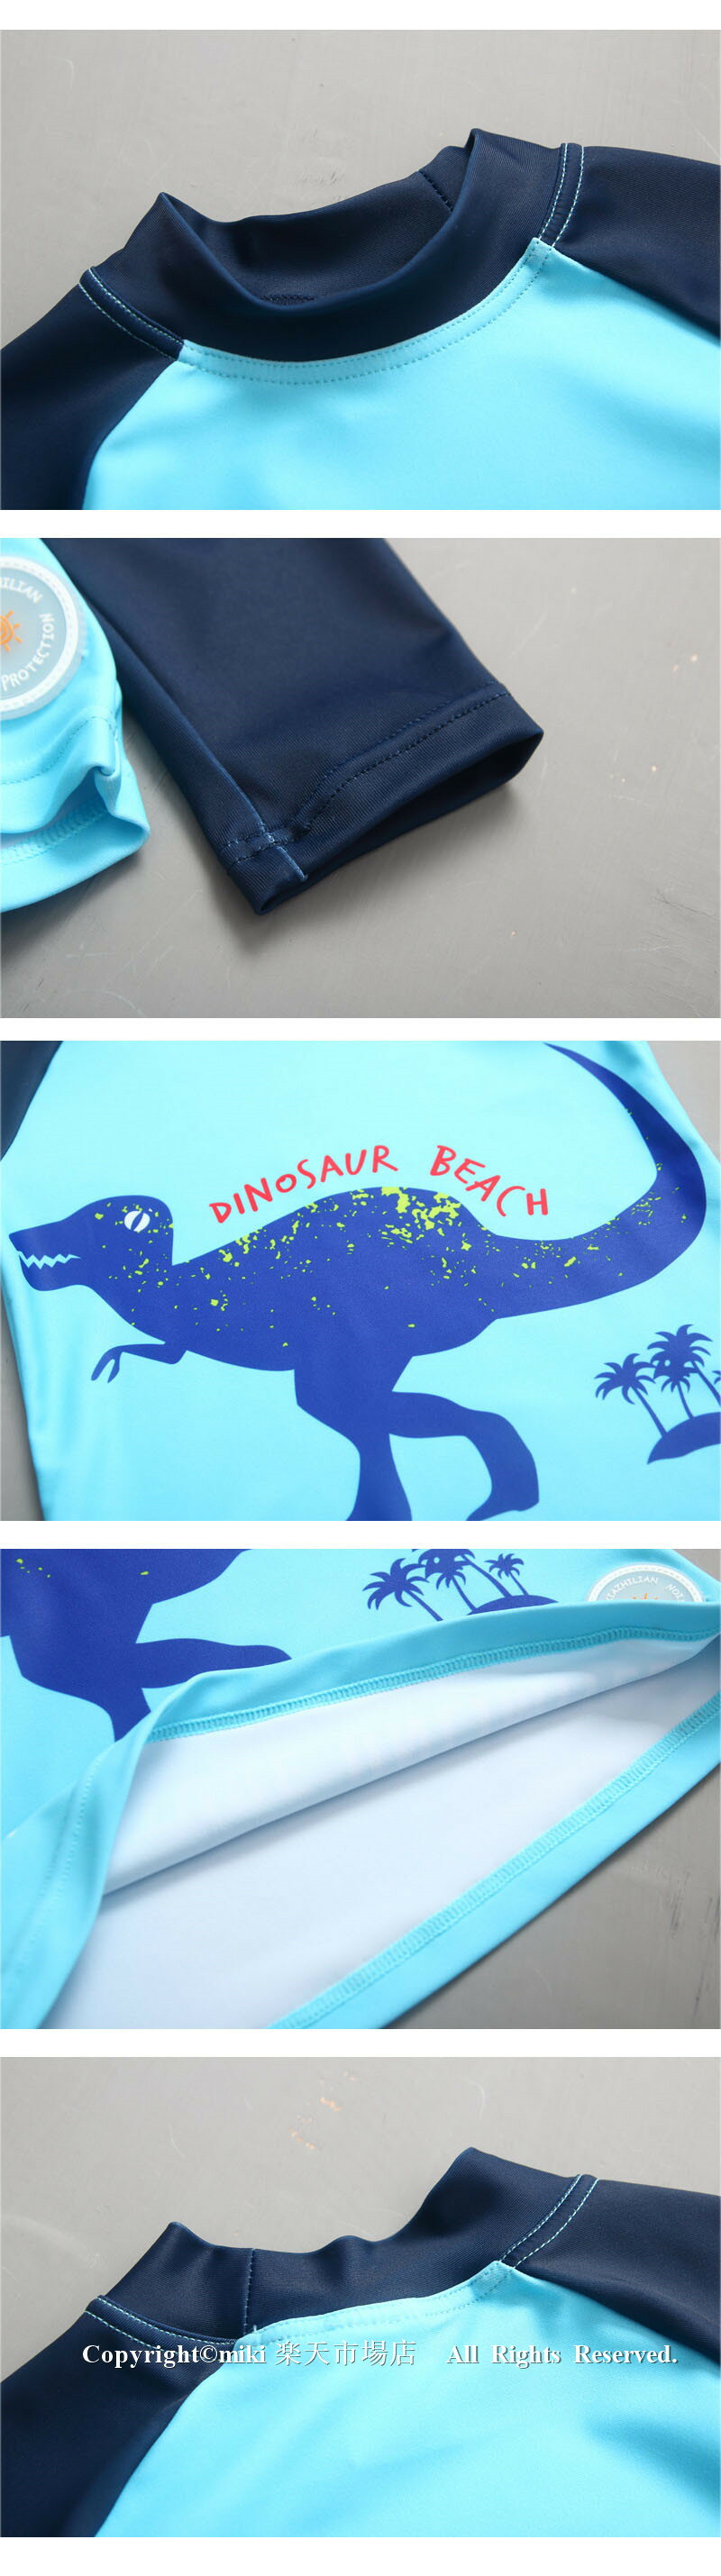 子供水着 送料無料 恐竜 キャップ付き セパレ...の紹介画像3